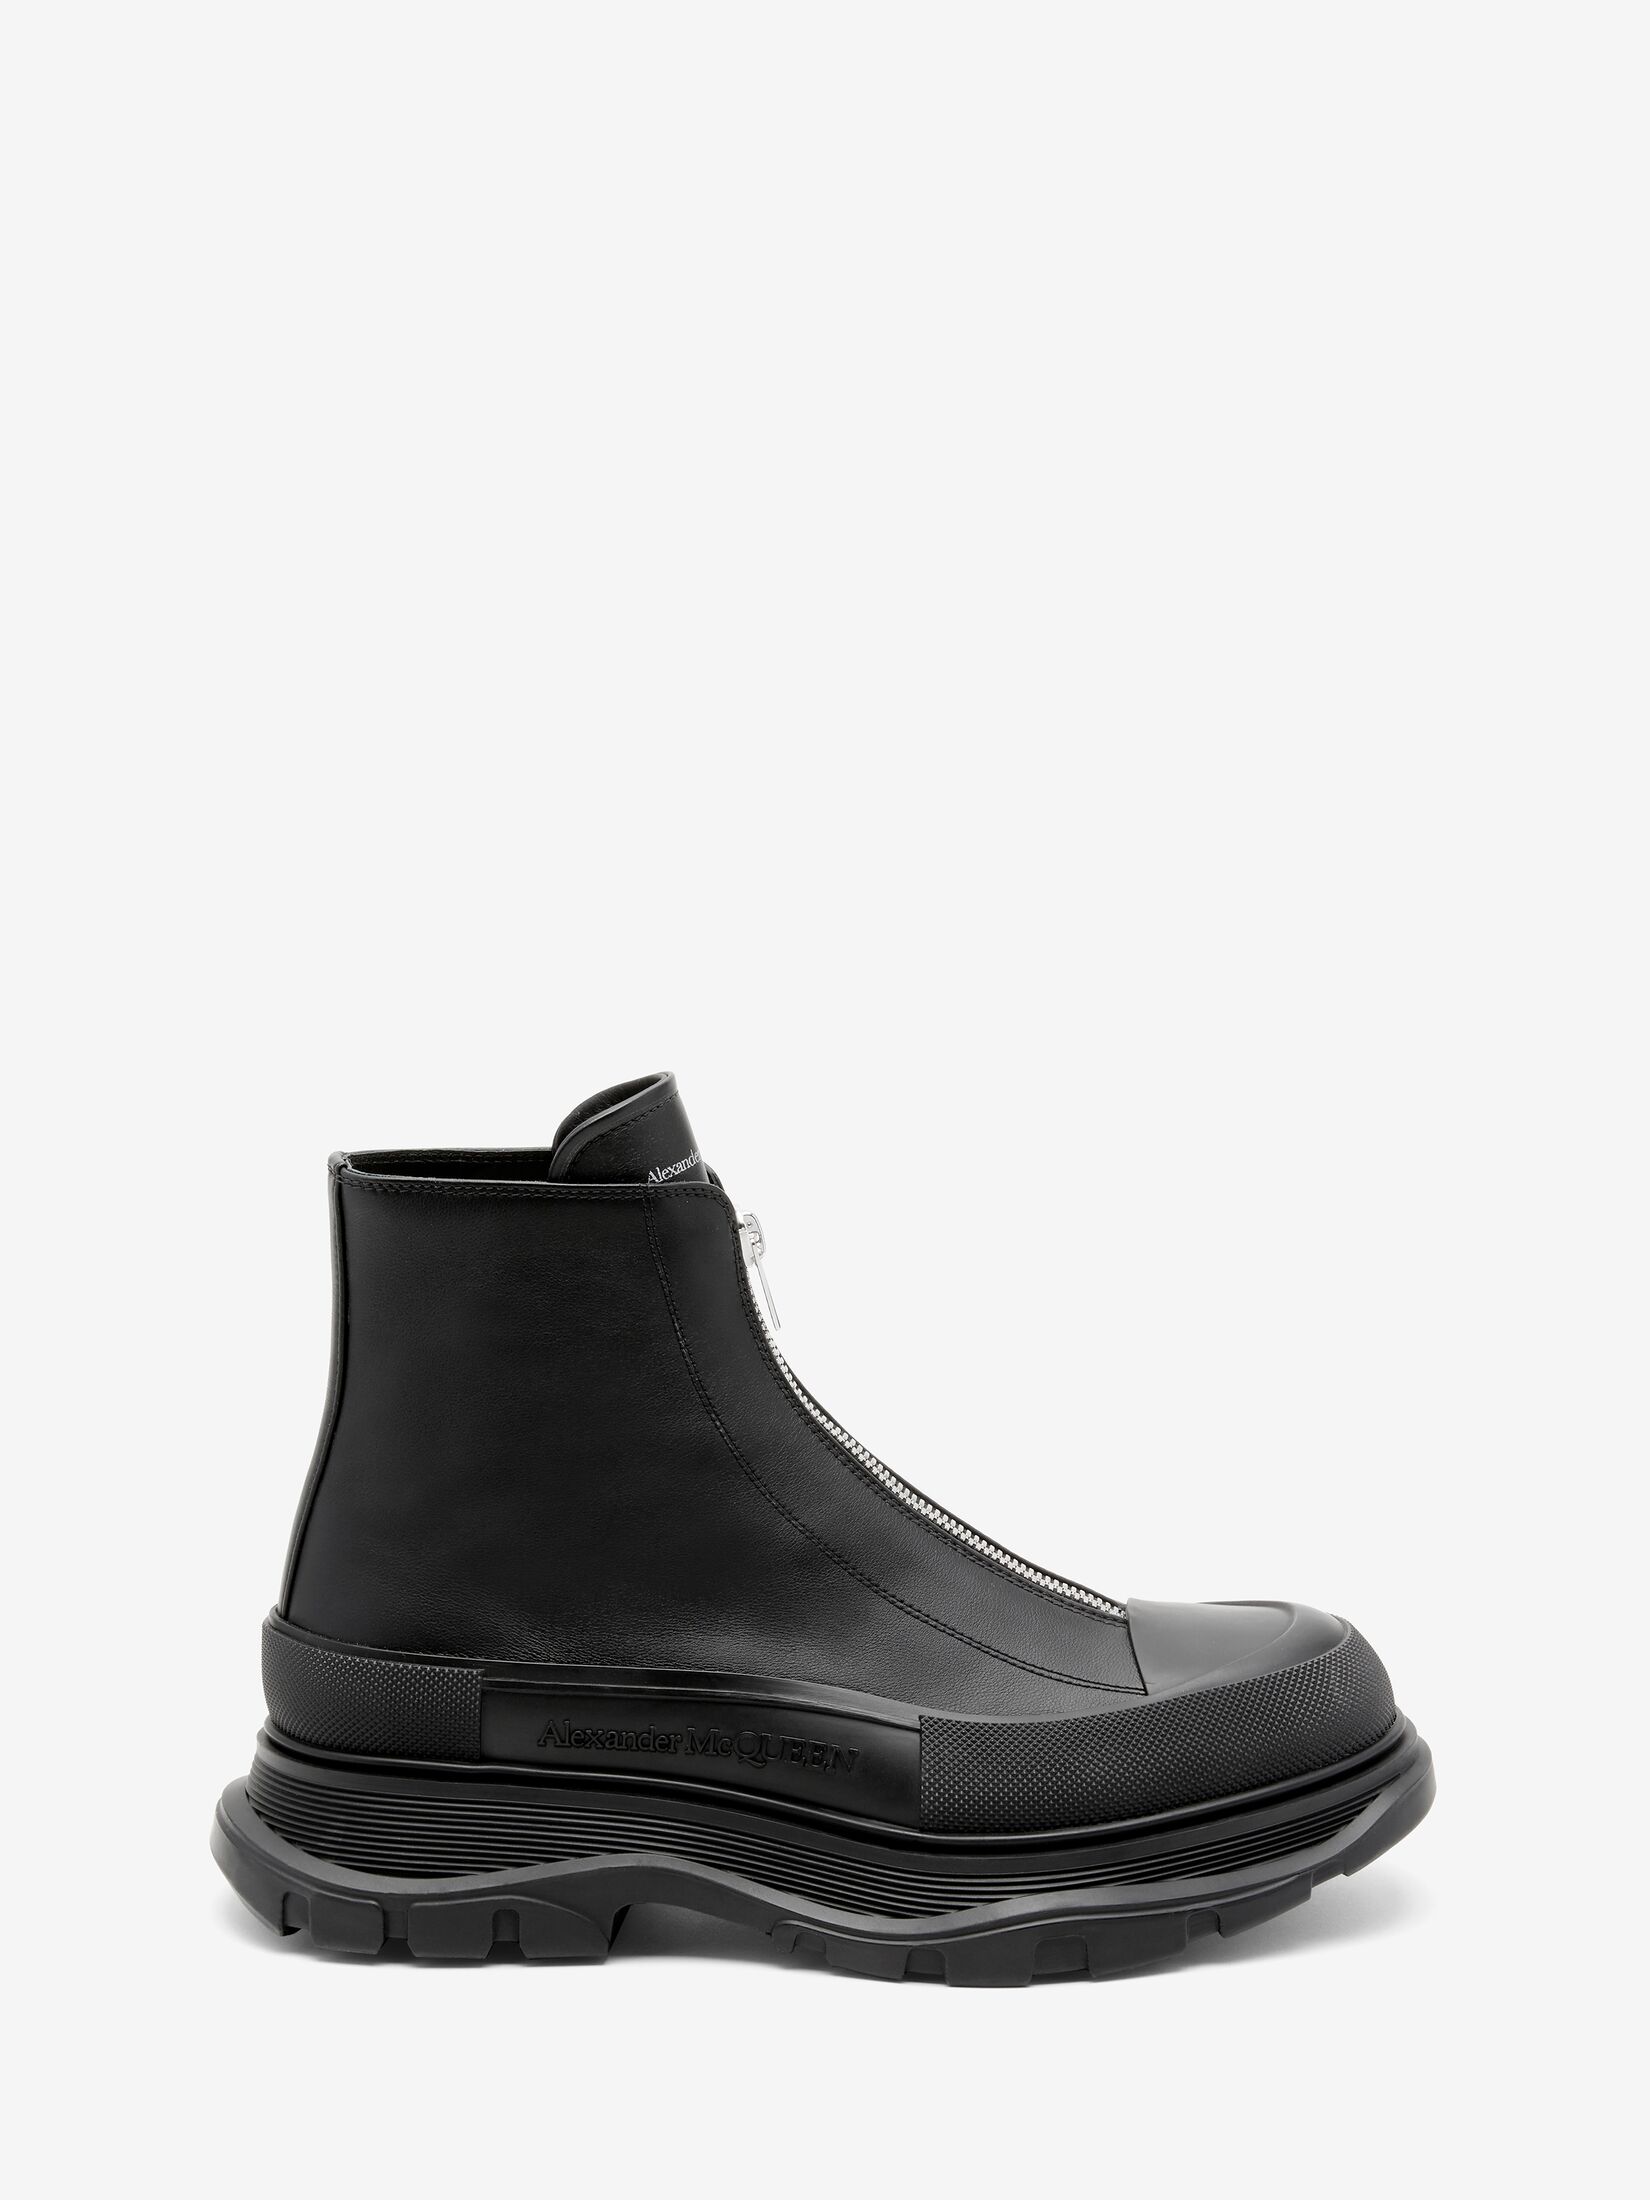 Men's Tread Slick | Shoe Collection | Alexander McQueen UK